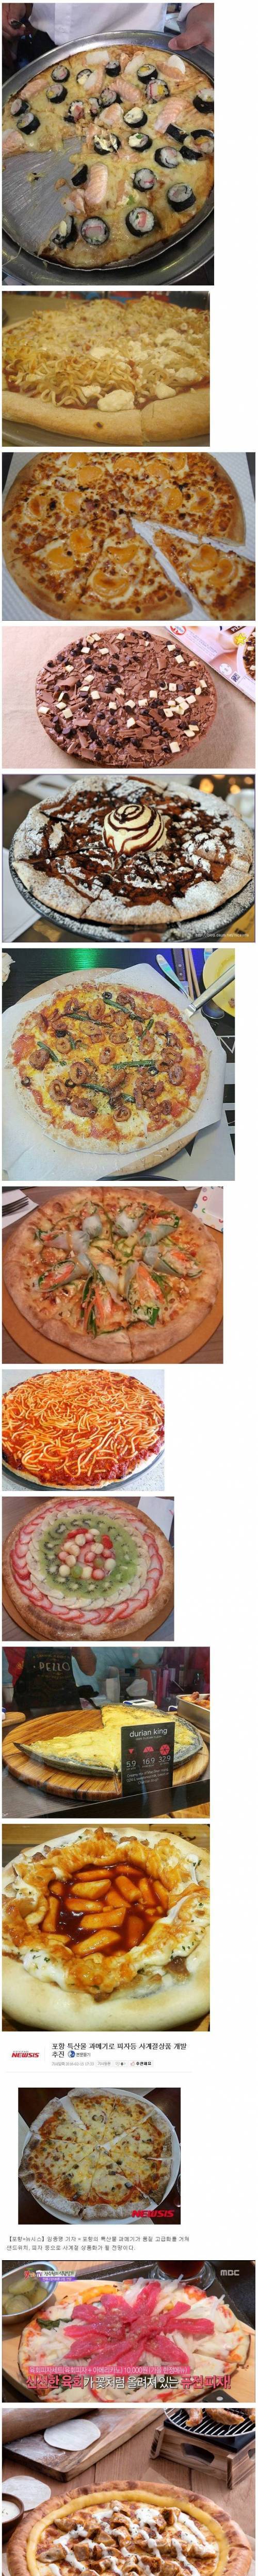 맘에 드는 피자 골라 먹기.jpg